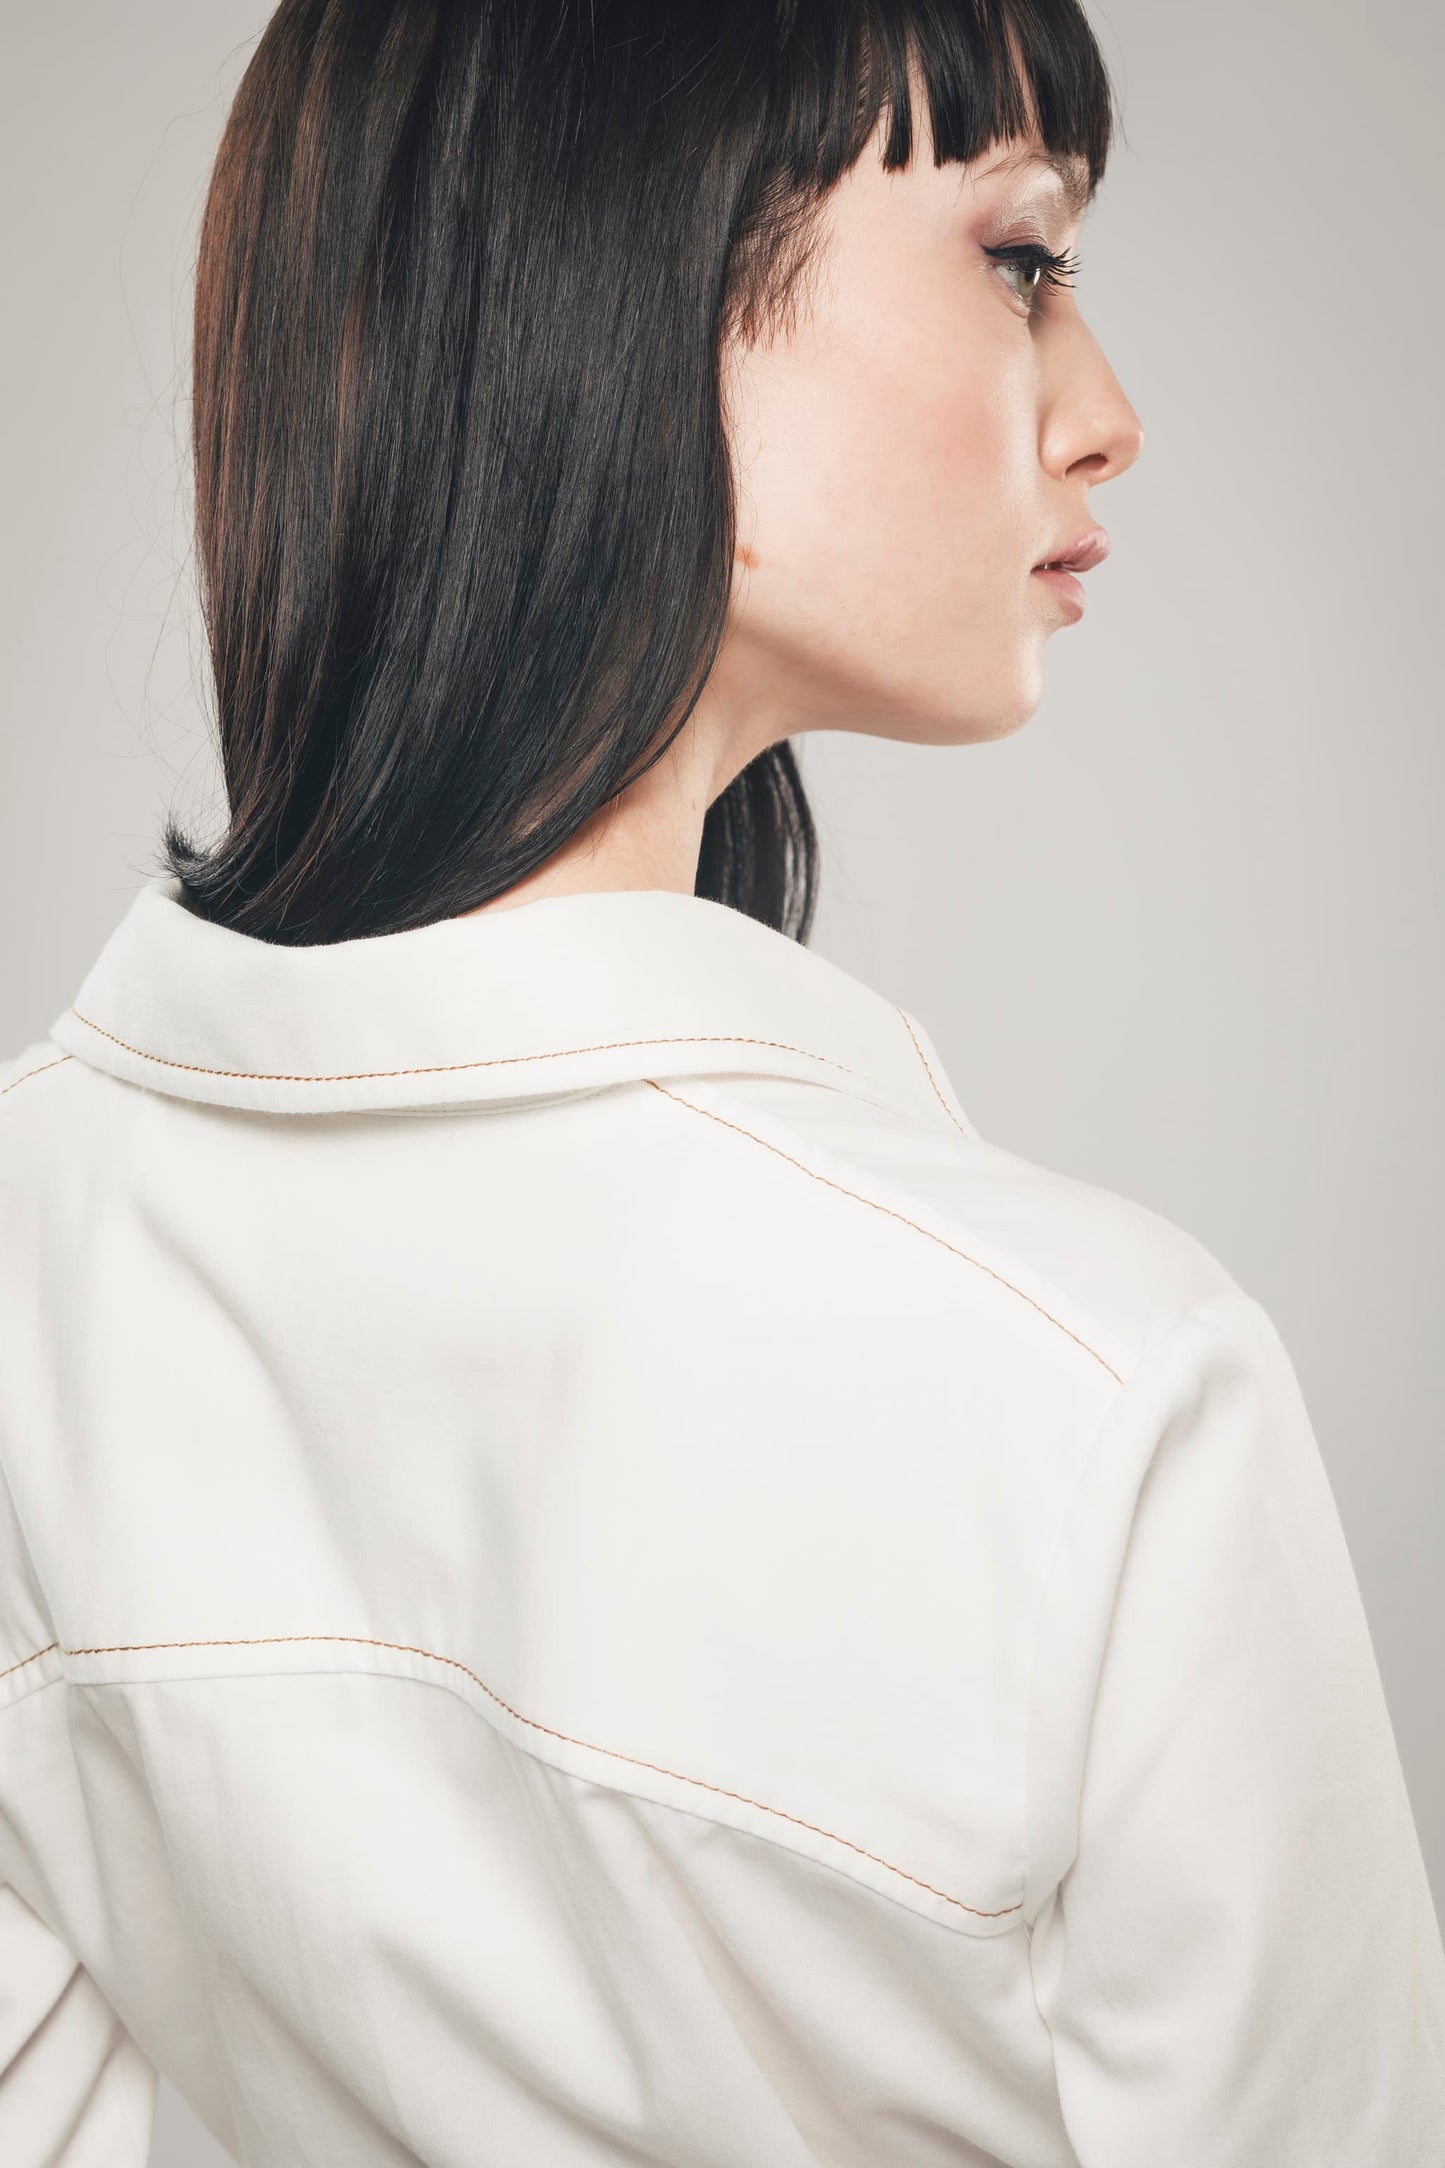 Image du détail du dos de la robe chemise blanche en coton biologique fabriquée par Organique. 